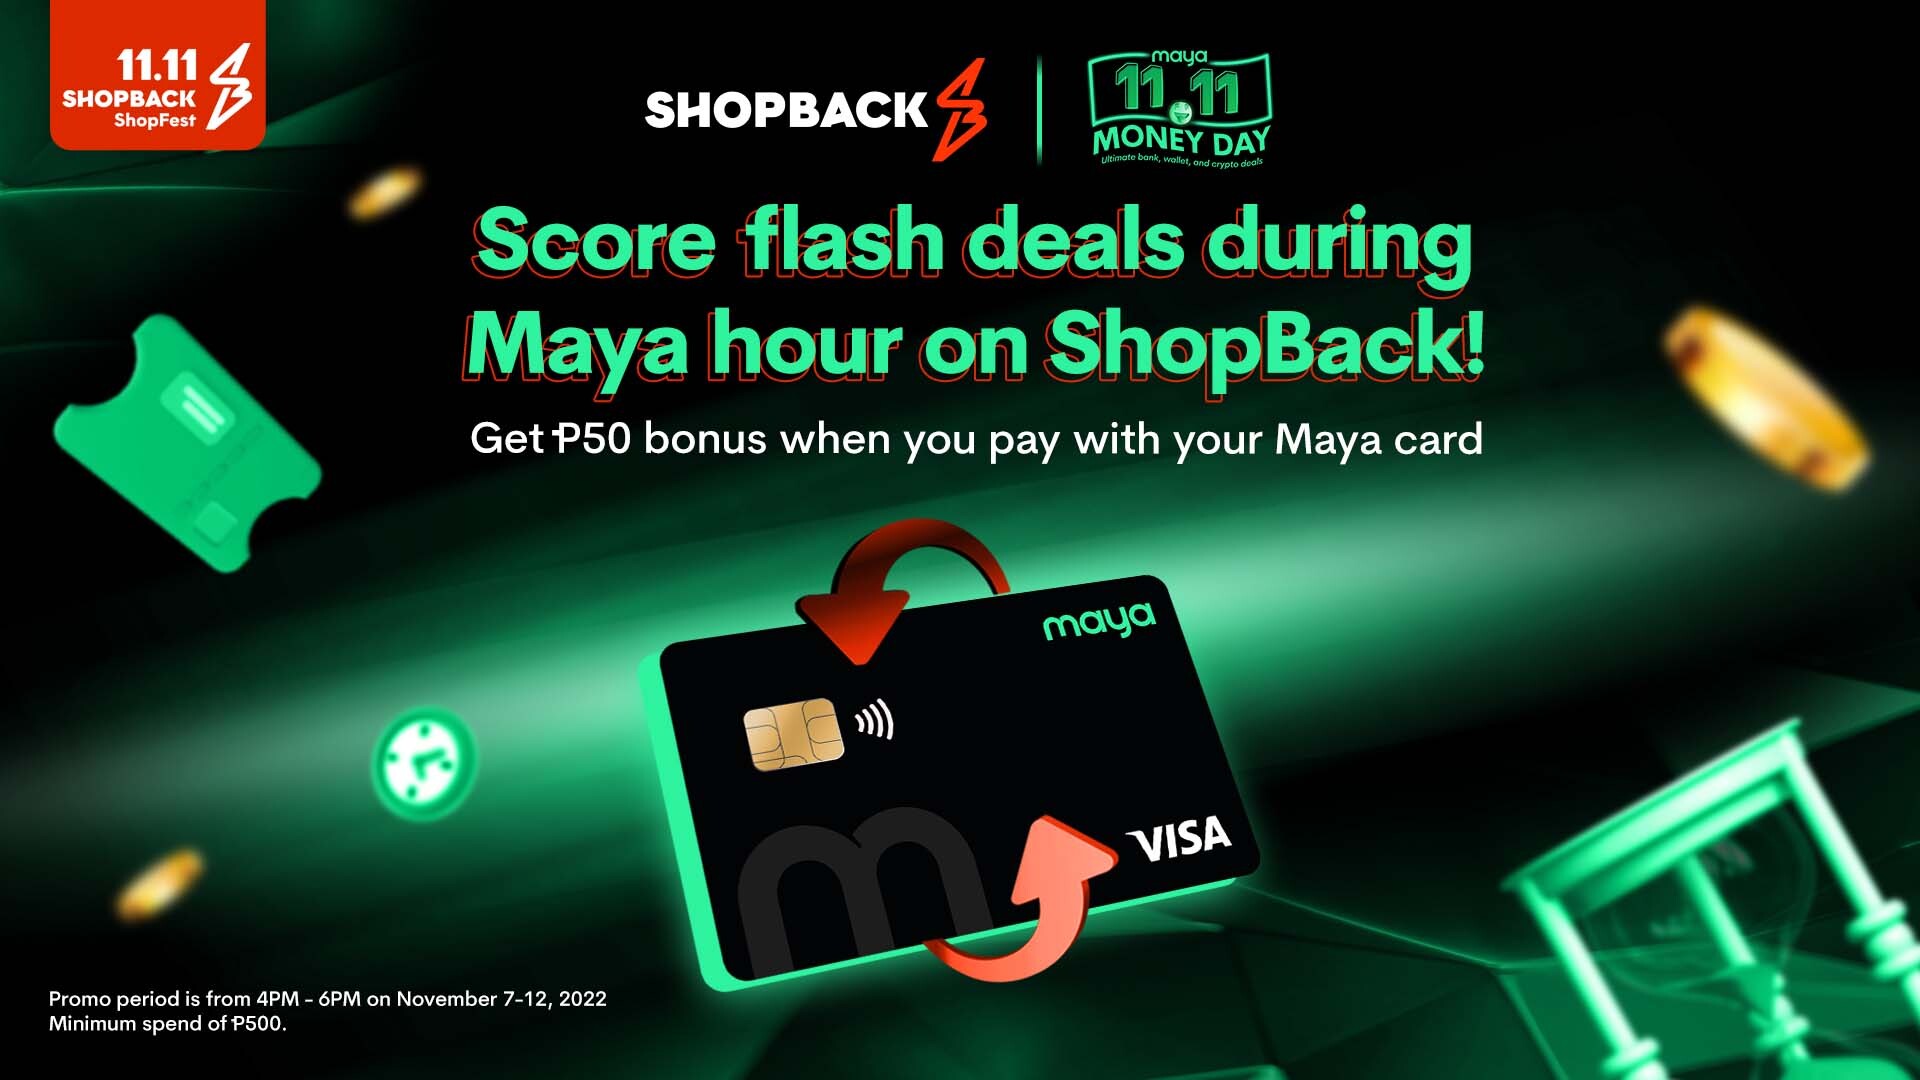 110922 - Shopback x Maya 11.11 Deals